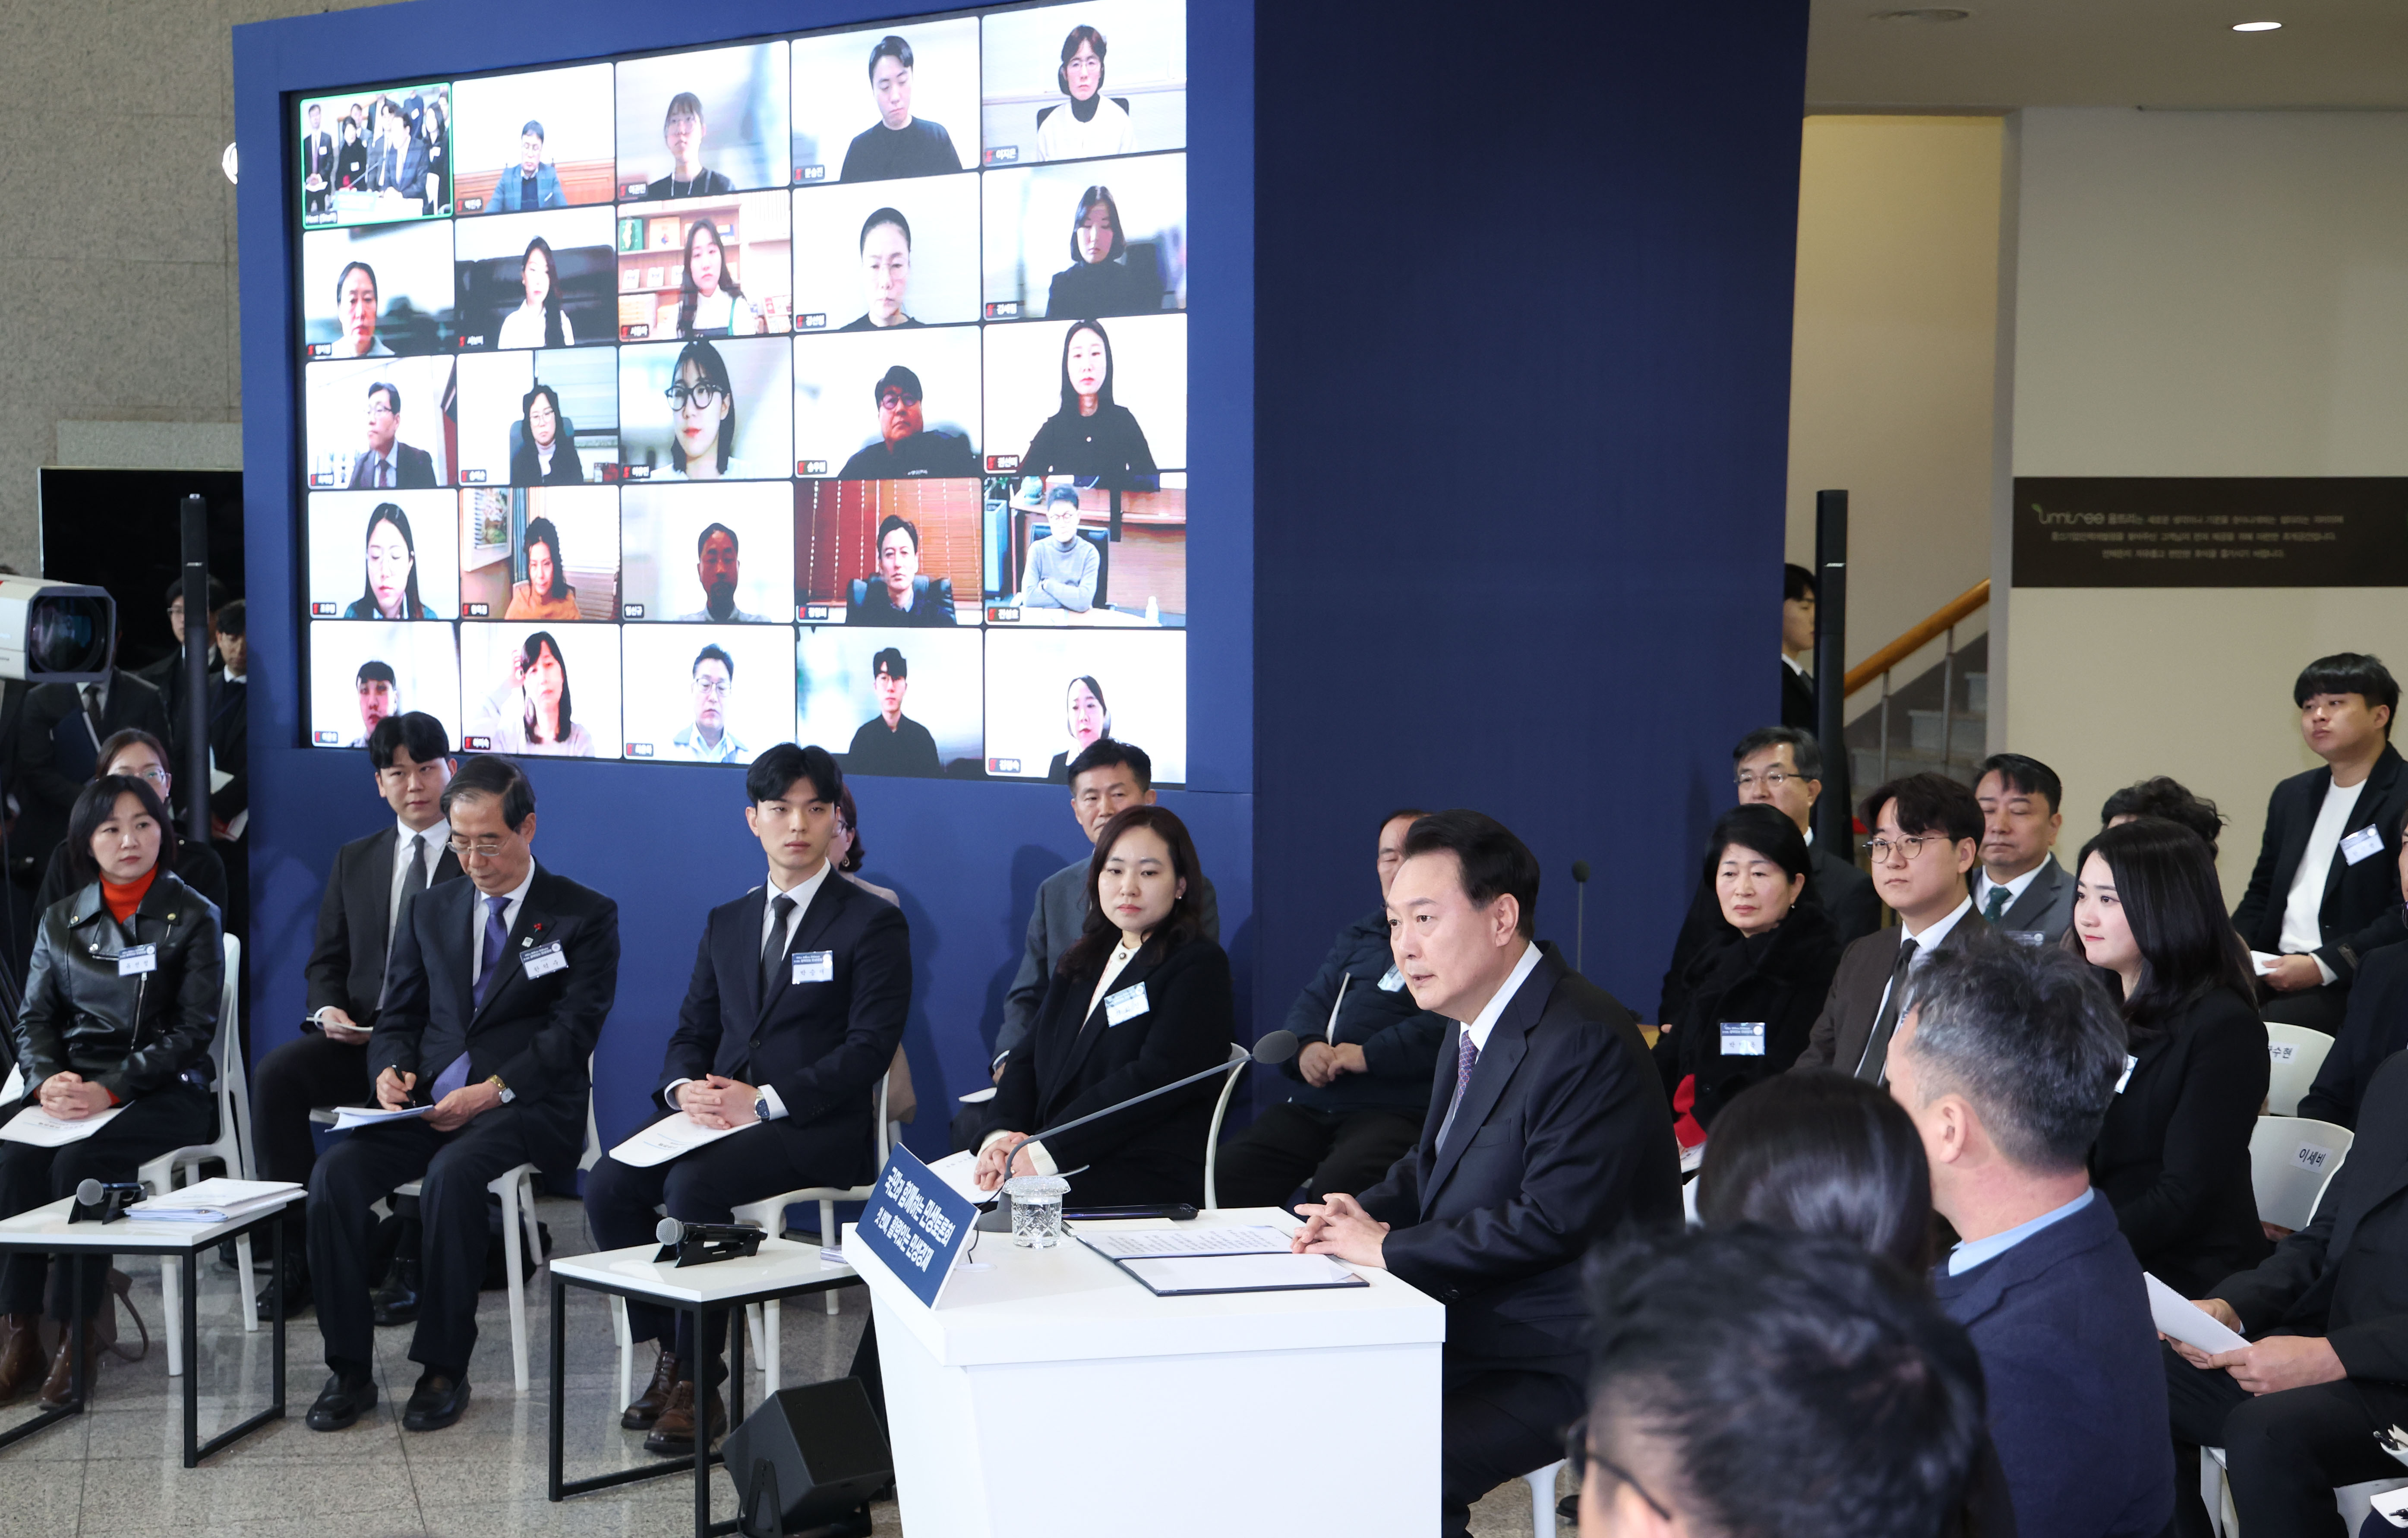 Le président Yoon Suk Yeol prononce un discours au centre de développement des ressources humaines des petites entreprises, à Yongin, dans la province du Gyeonggi, le 4 janvier 2024. Le taux de croissance économique de la Corée a atteint 1,3 % au premier trimestre 2024, son plus haut niveau depuis deux ans. En 2023, les taux d'emploi et de chômage ont respectivement été les plus élevés (62,6 %) et les plus bas (2,7 %) jamais enregistrés, témoignant des efforts déployés pour dynamiser l'économie et favoriser l'emploi.